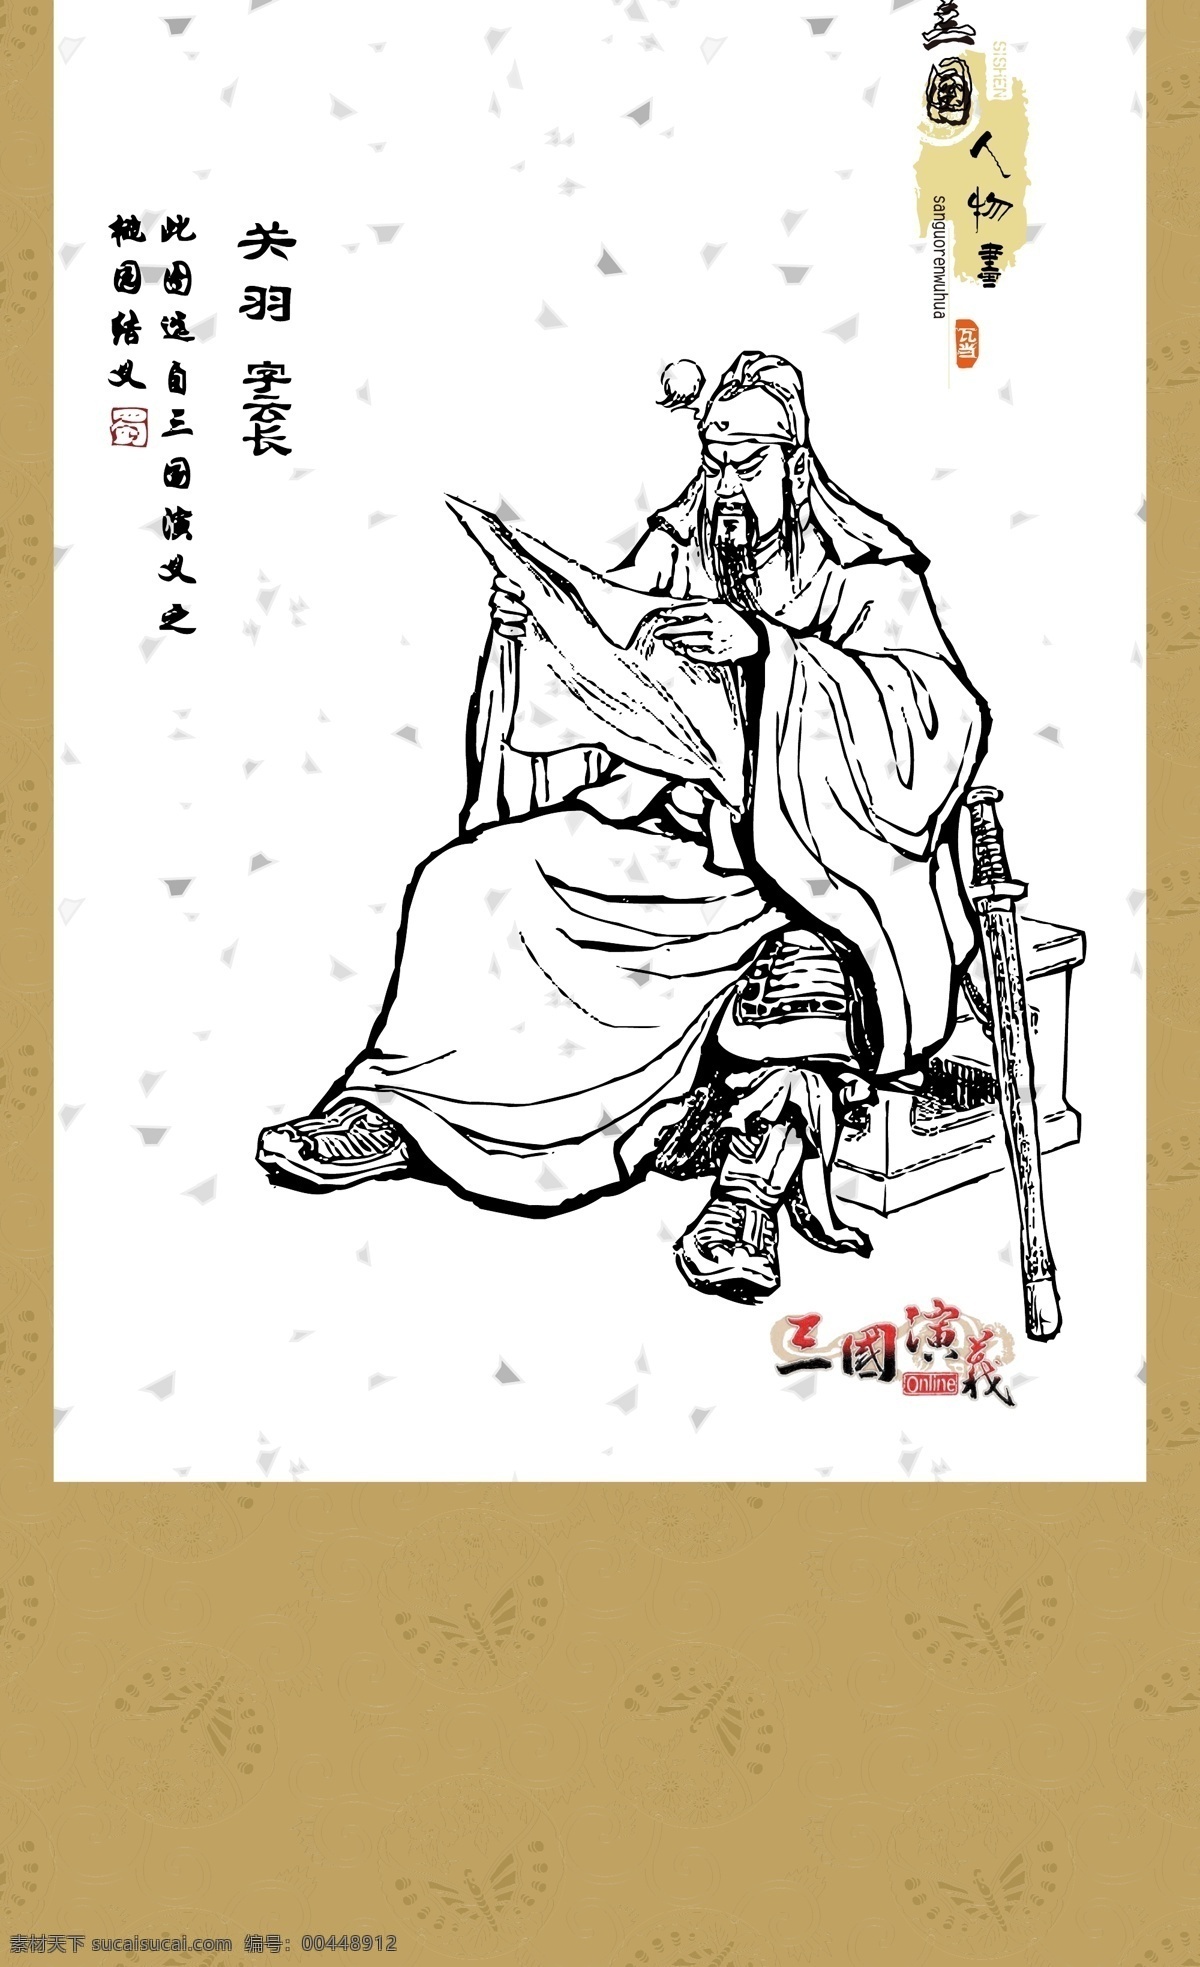 三国演义 人物画 系列 关羽 白描 图案 绘画 古典 传统纹样 人物 神话传说 传统文化 文化艺术 矢量